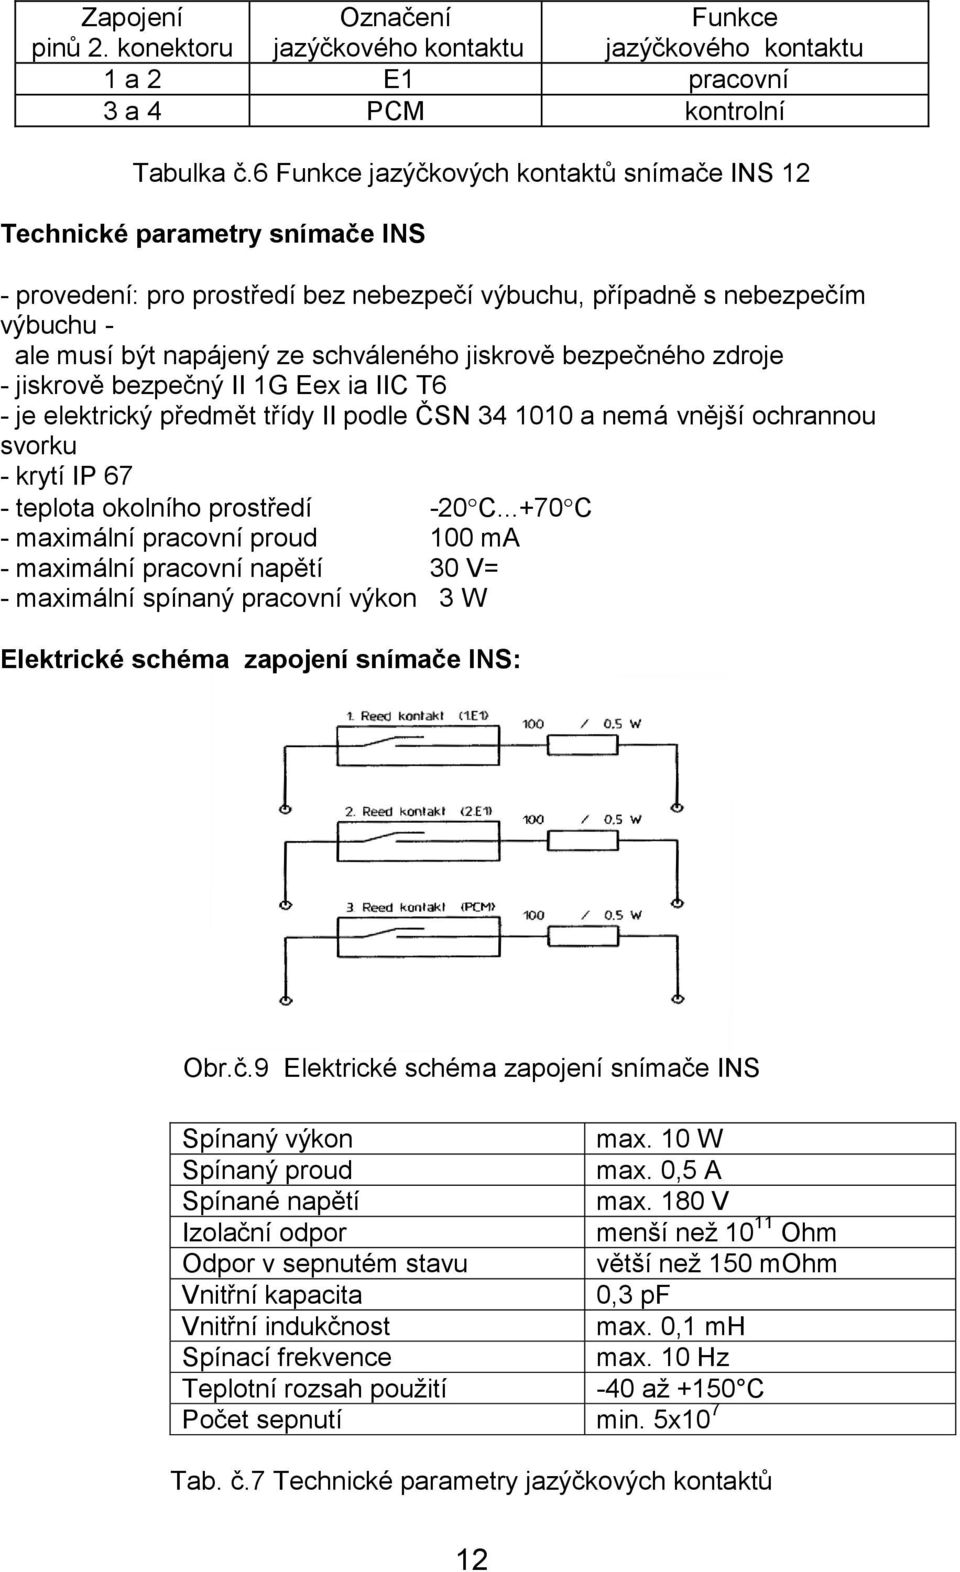 jiskrově bezpečného zdroje - jiskrově bezpečný II 1G Eex ia IIC T6 - je elektrický předmět třídy II podle ČSN 34 1010 a nemá vnější ochrannou svorku - krytí IP 67 - teplota okolního prostředí -20 C.